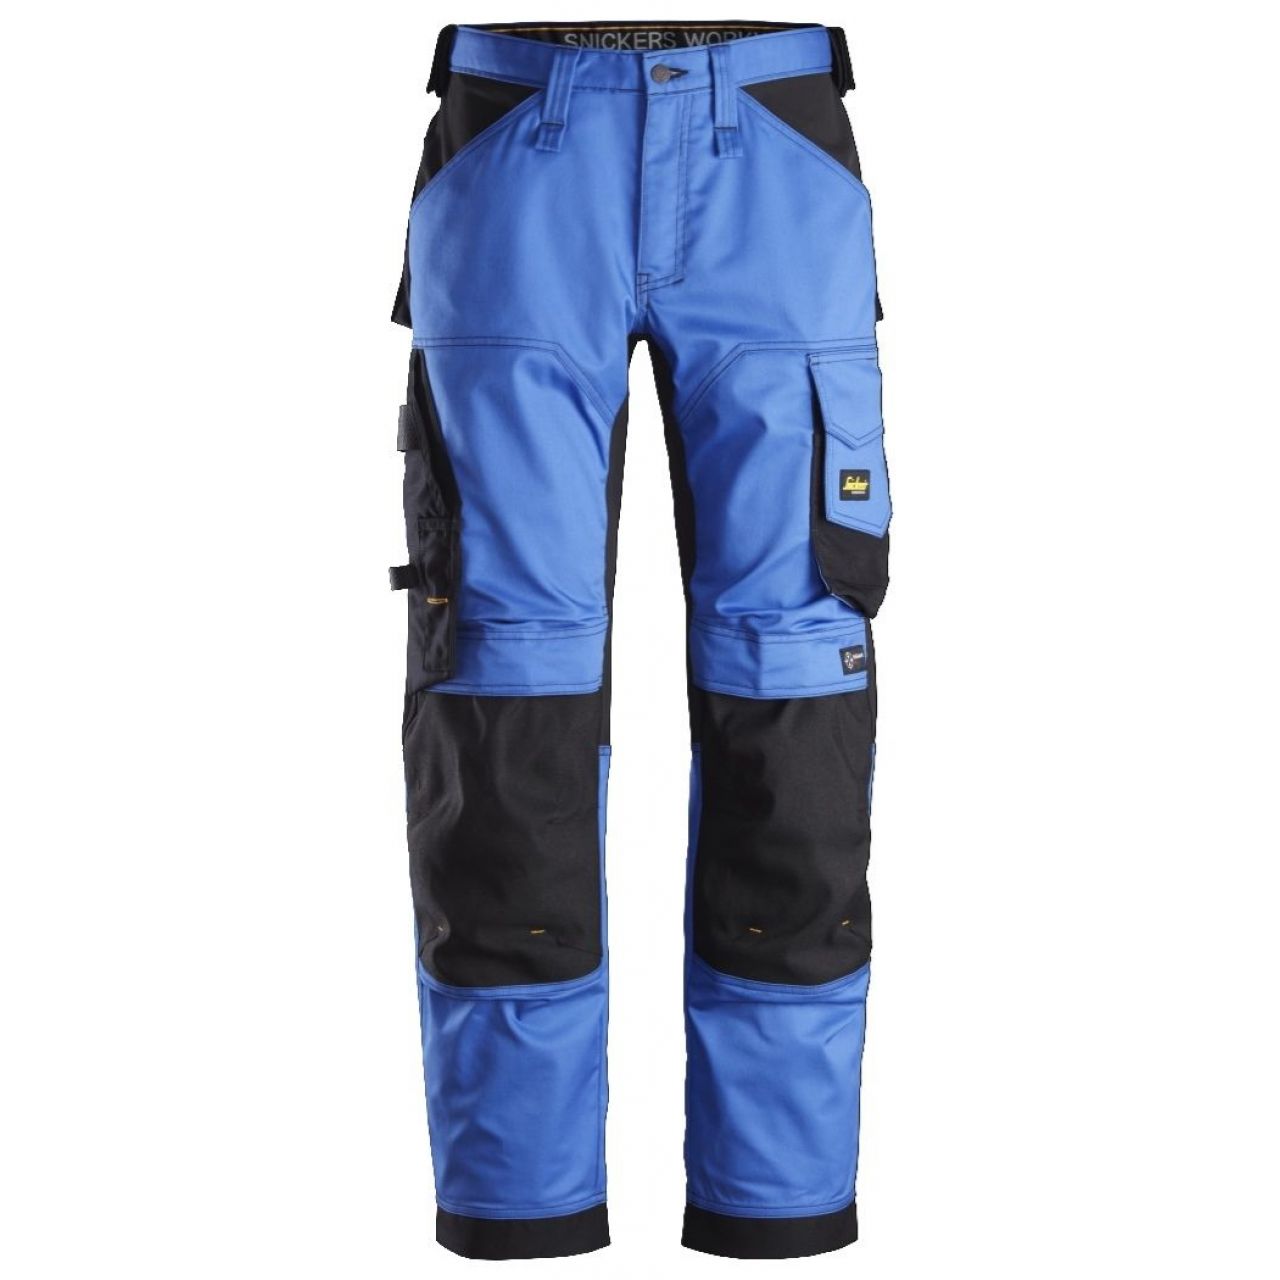 Pantalon elastico ajuste holgado AllroundWork azul-negro talla 192